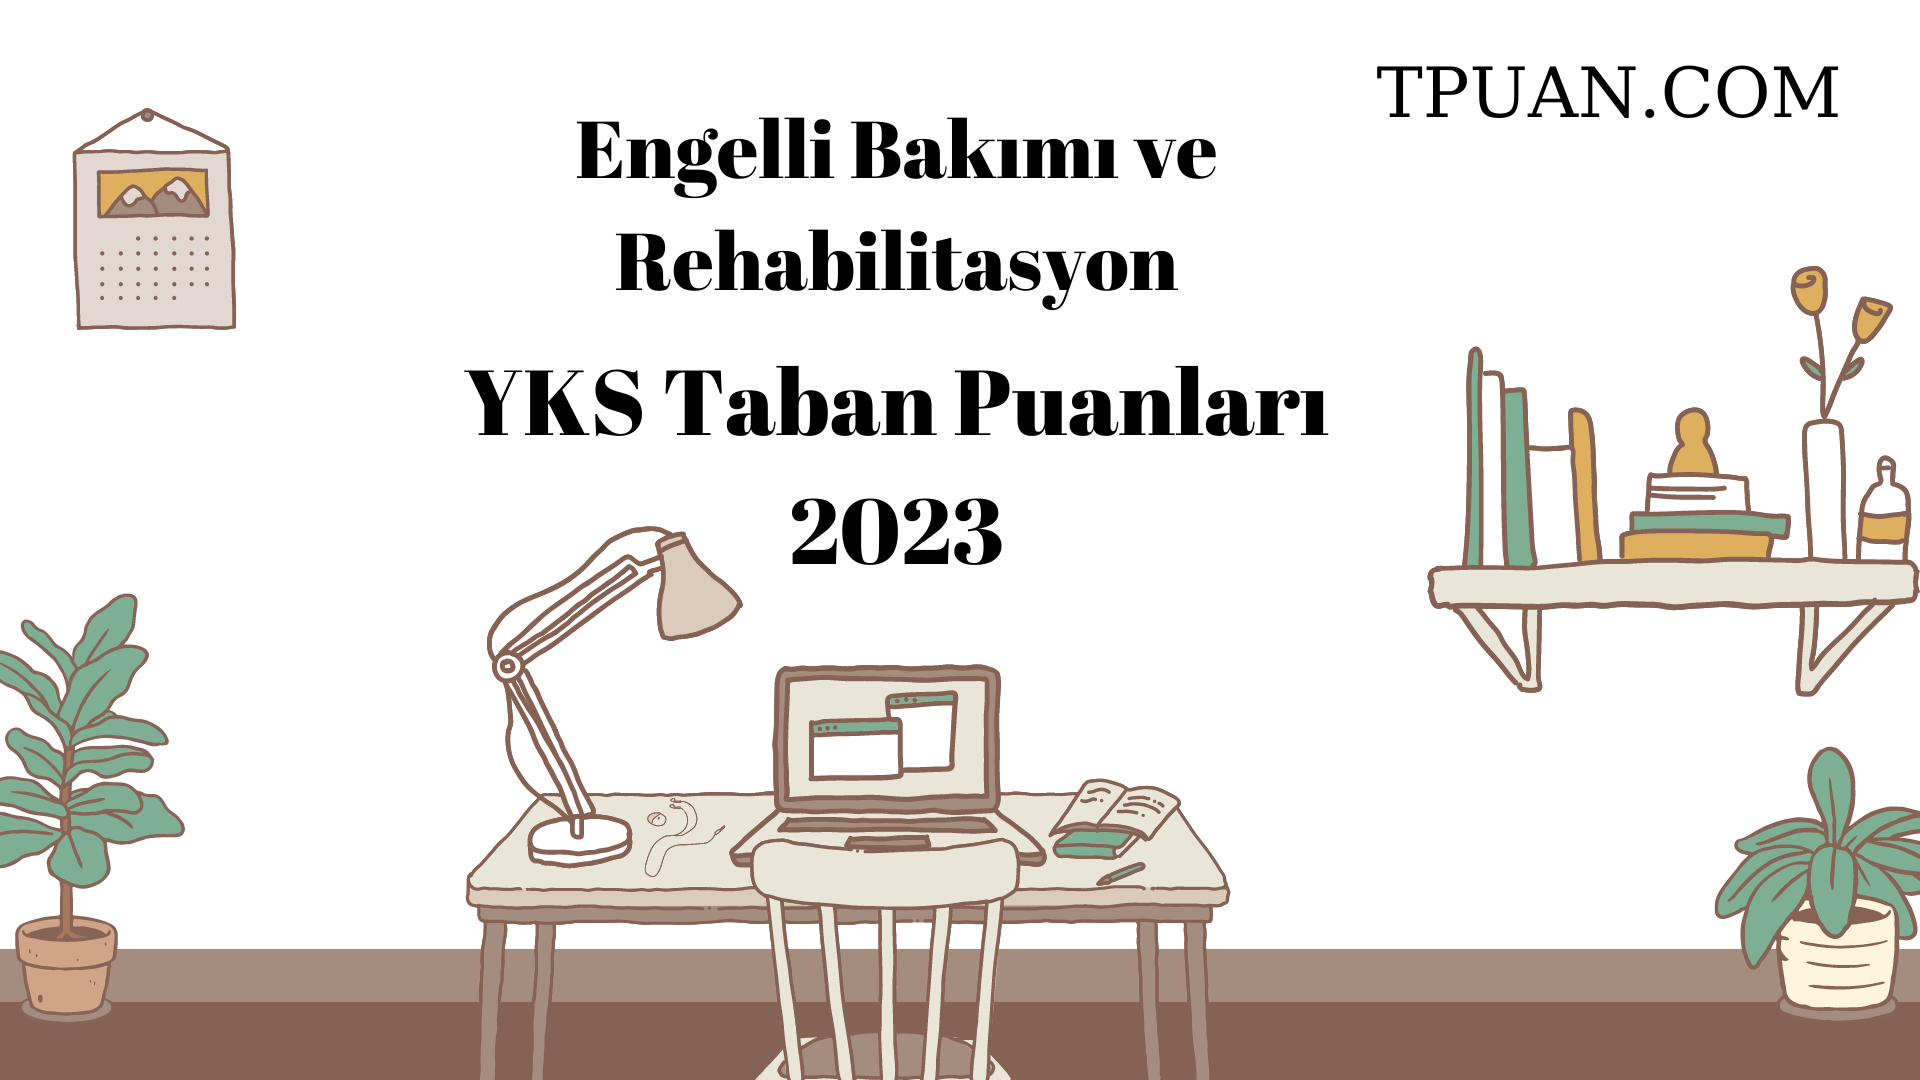  Engelli Bakımı ve Rehabilitasyon YKS Taban Puanları 2023